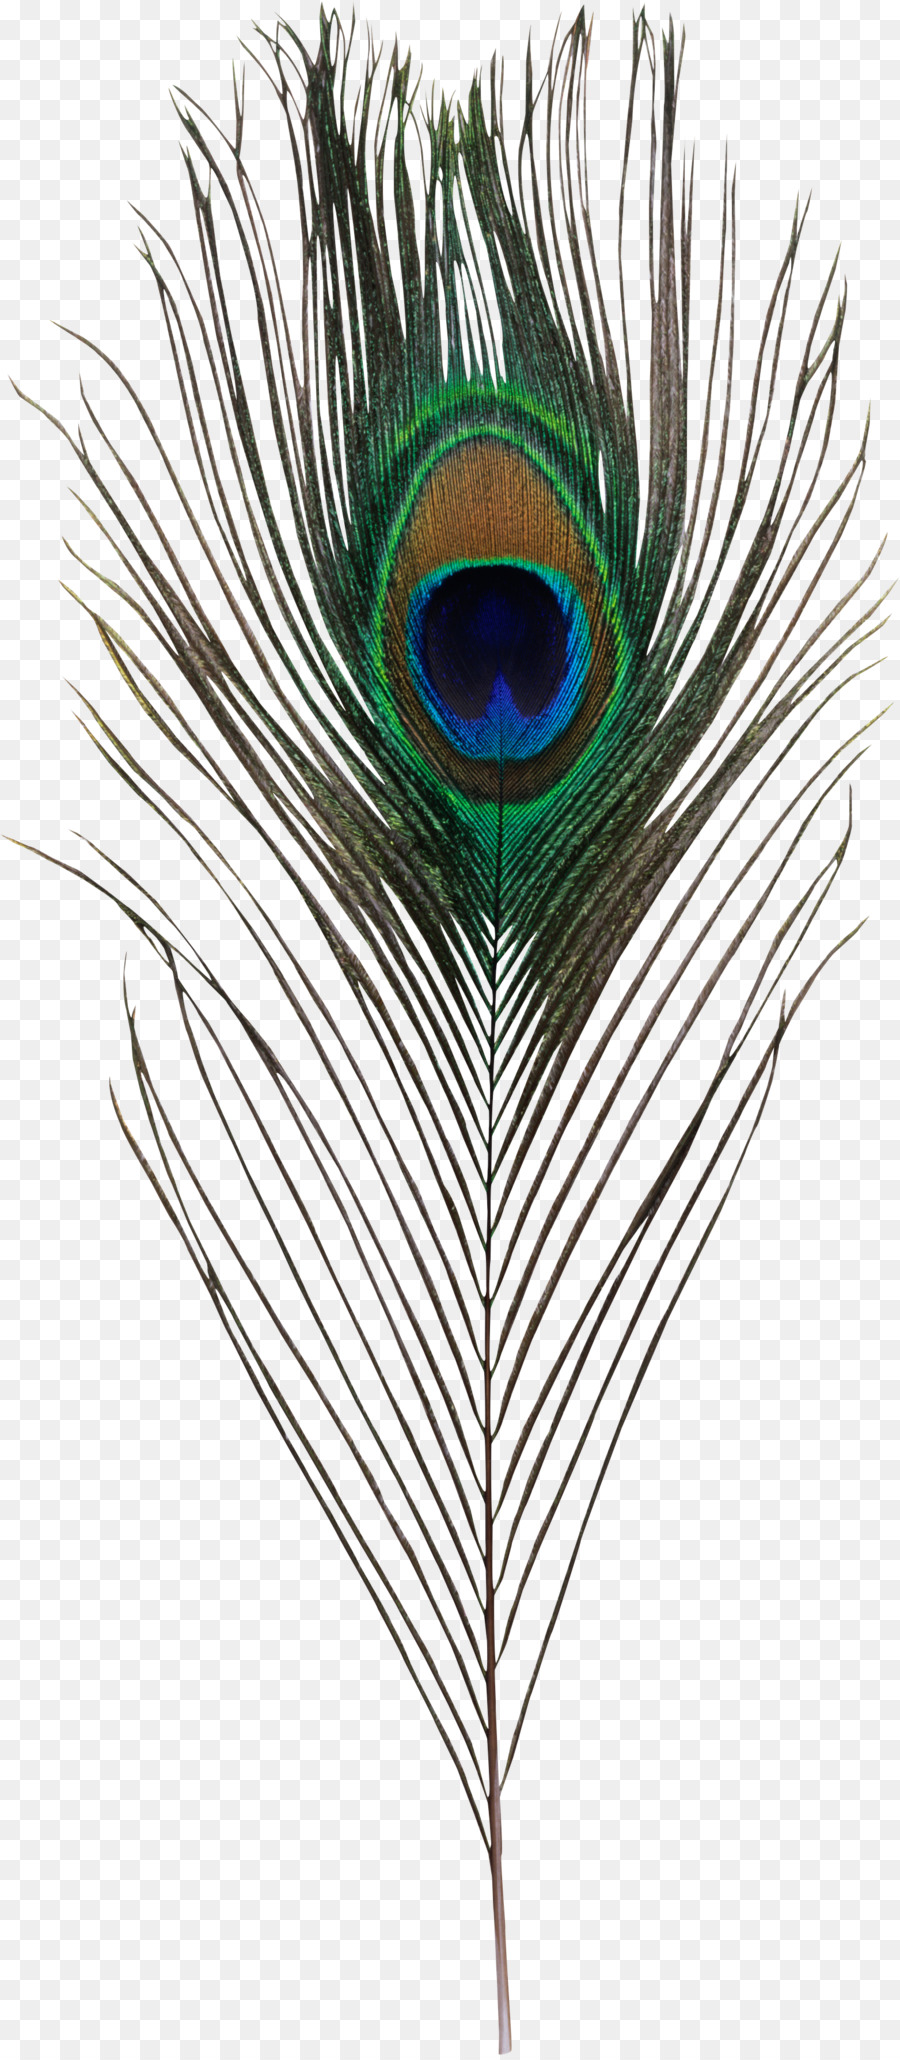 Uccello di Piume di Pavone Clip art Portable Network Graphics - uccello